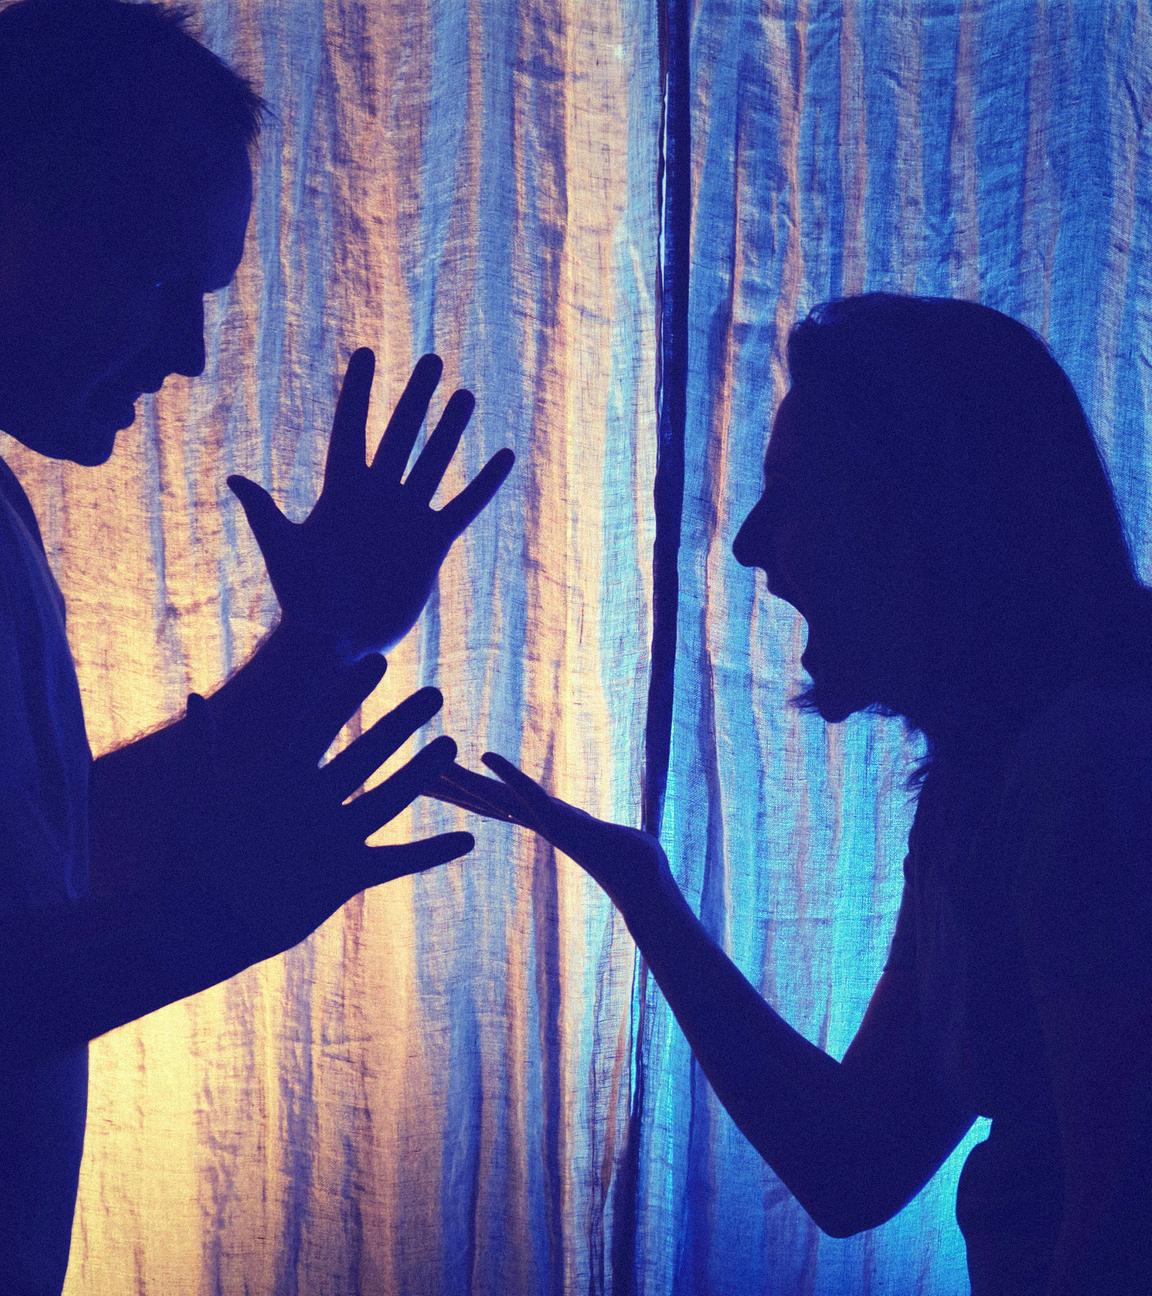 Schattenhafte Aufnahme vor heller Gardine: Die Silhouetten eines streitenden Paares